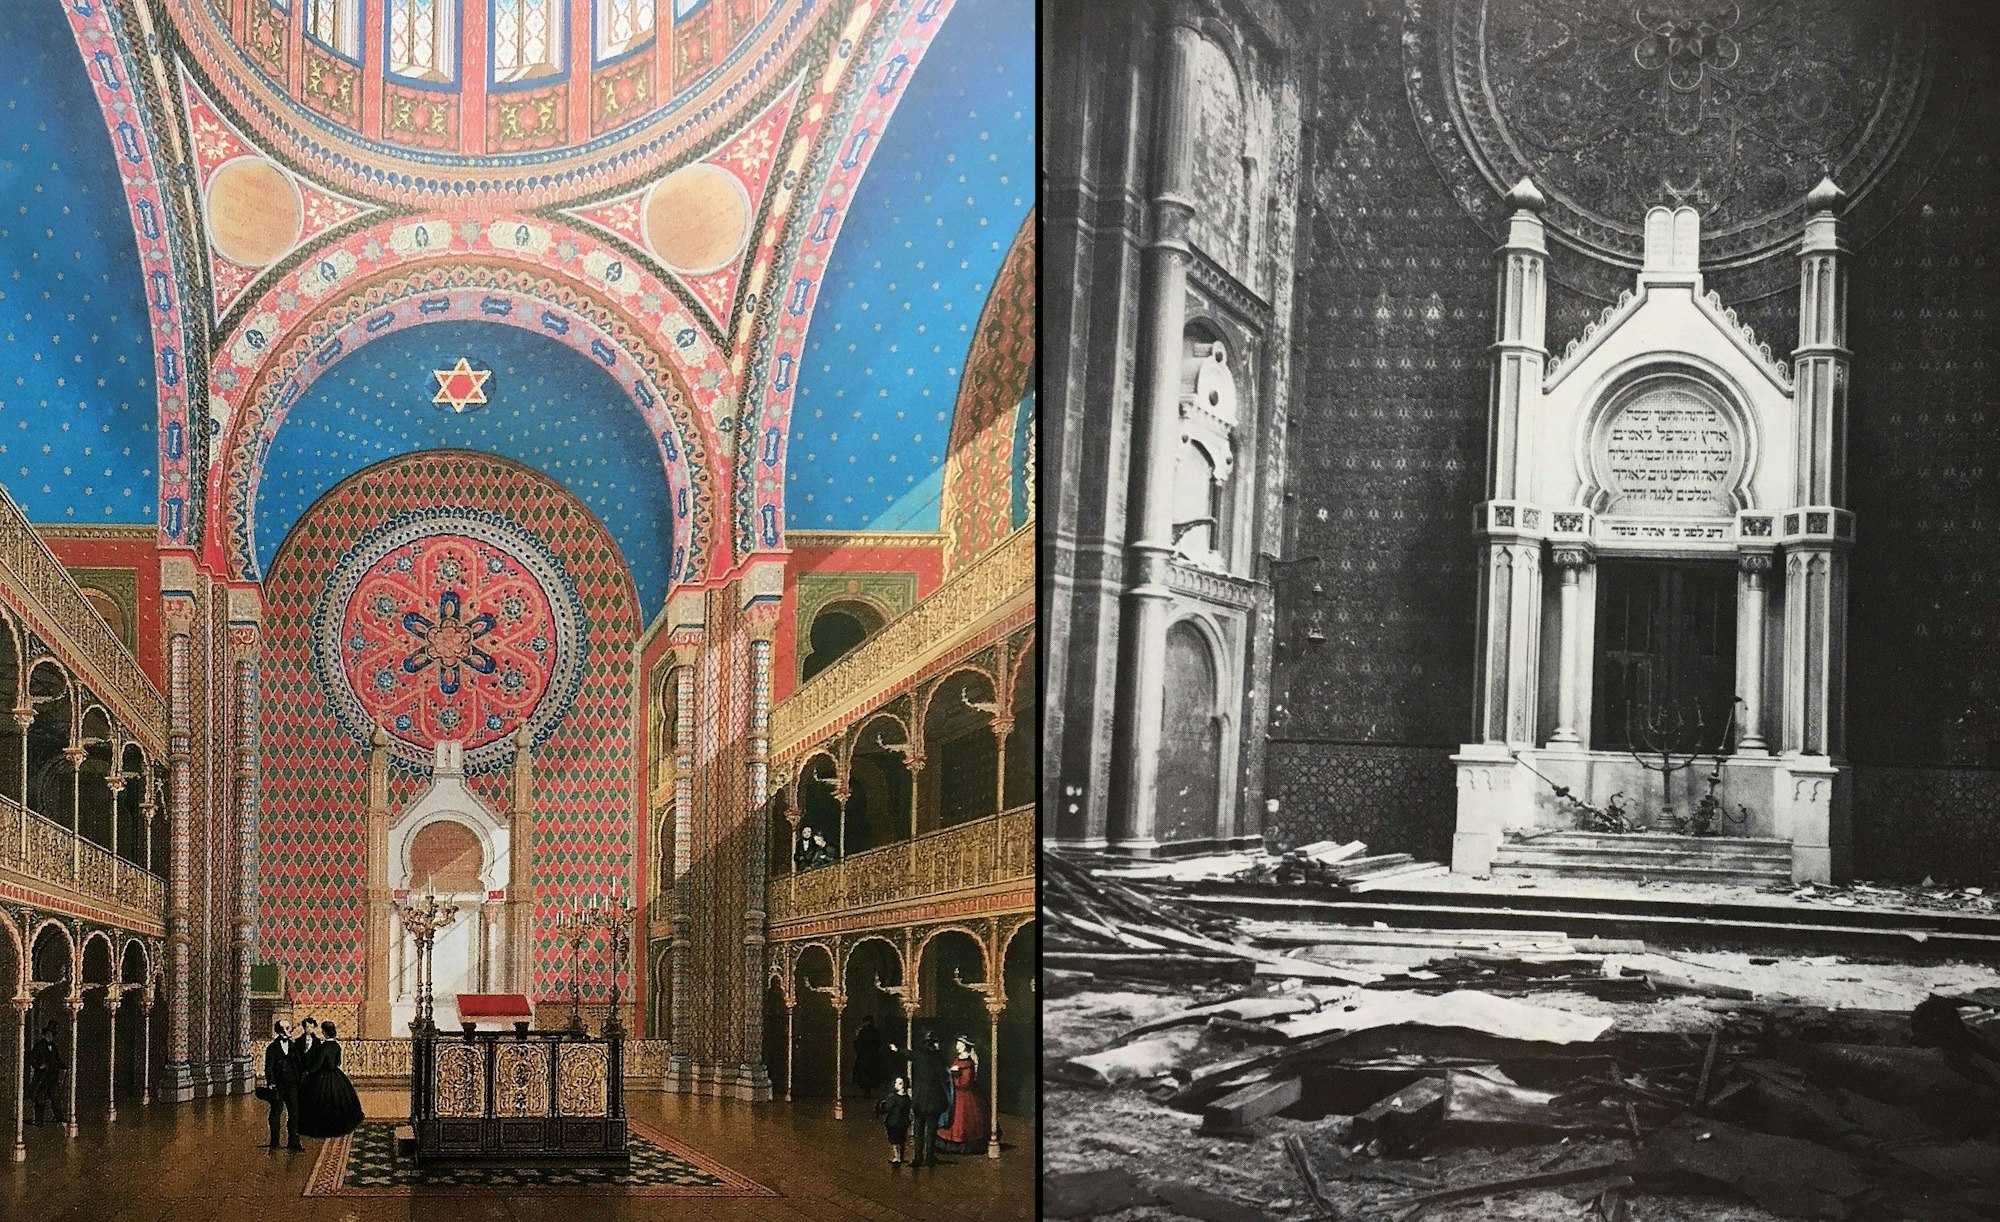 Kombination zweier Fotos. Links eine Chromolithographie mit dem aufwendig verzierten Innenraum der Synagoge in der Glockengasse. Die Decke ist blau gestrichen, zahlreiche Flächen sind golden verziert. Rechts eine fotografische Schwarz-Weiß-Aufnahme, die den zerstörten Innenraum mit dem Toraschrein zeigt.